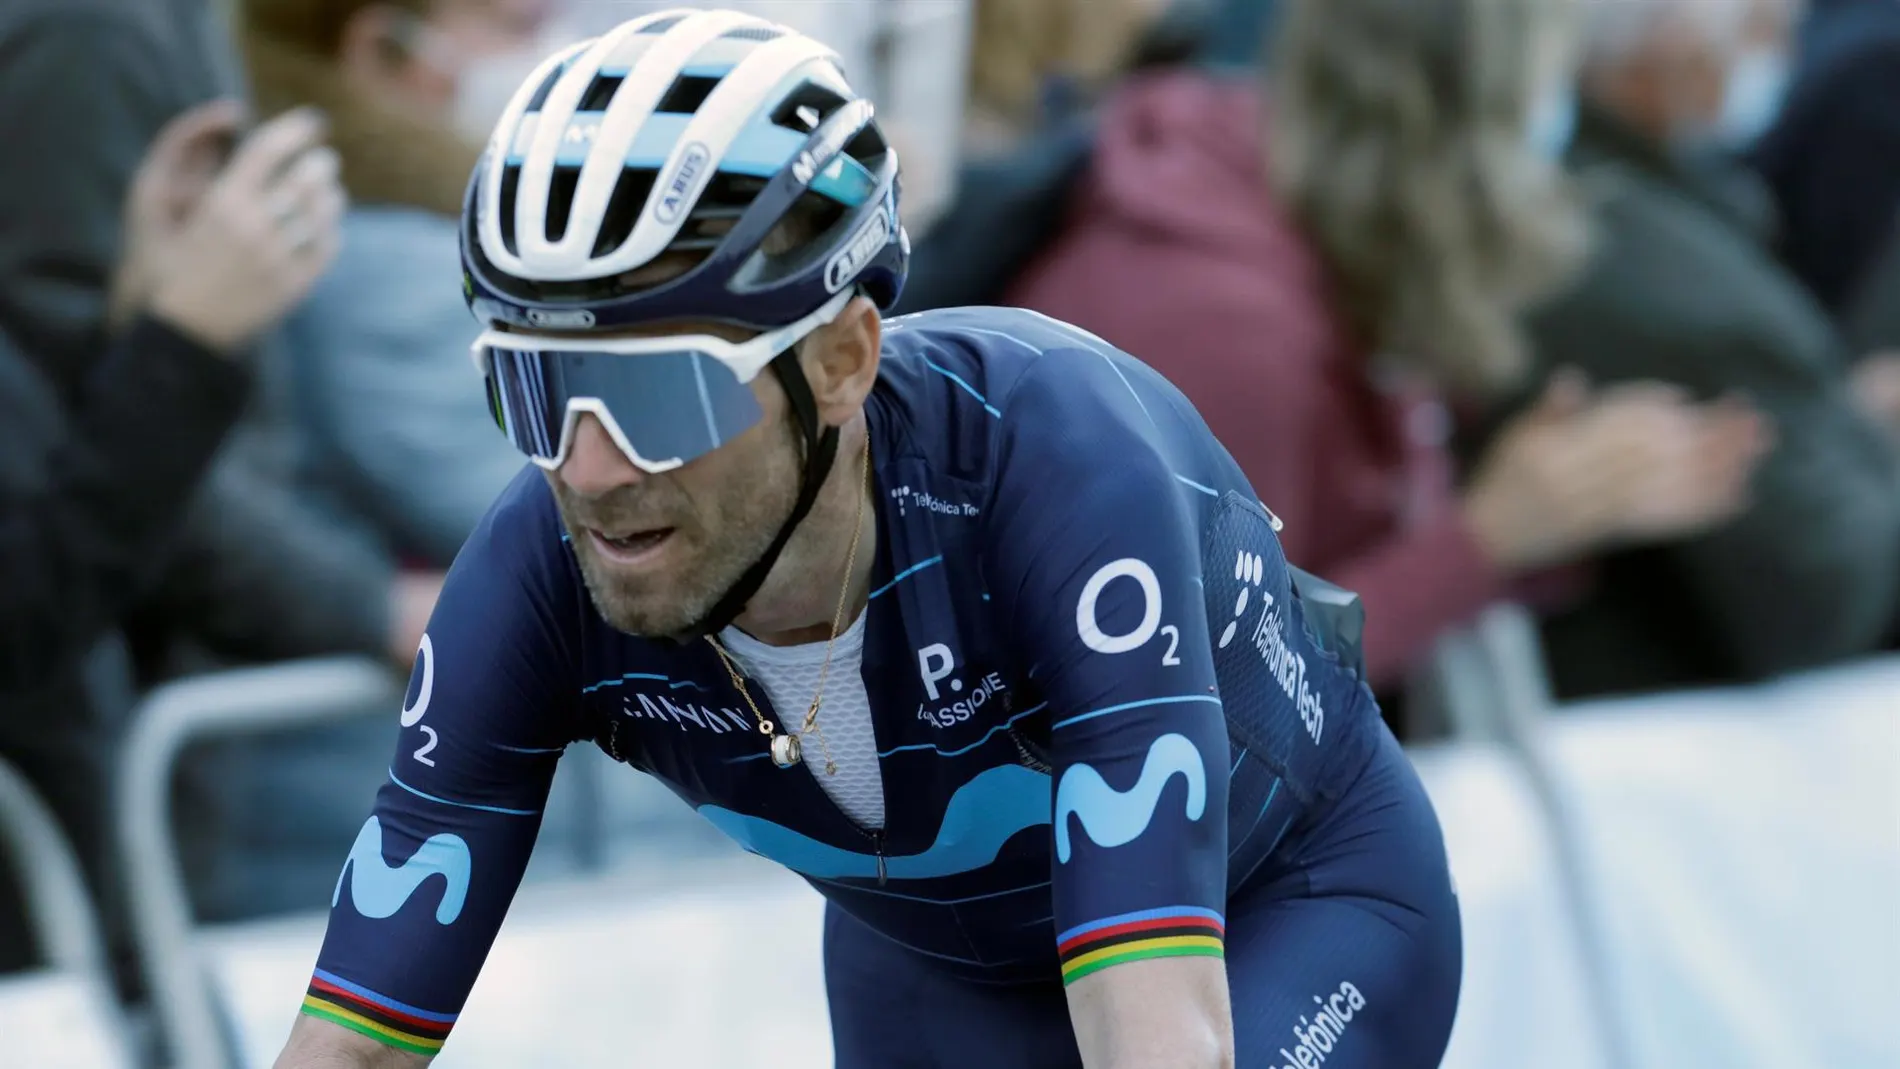 Alejandro Valverde disputará la Clásica de San Sebastián para evitar el descenso de Movistar